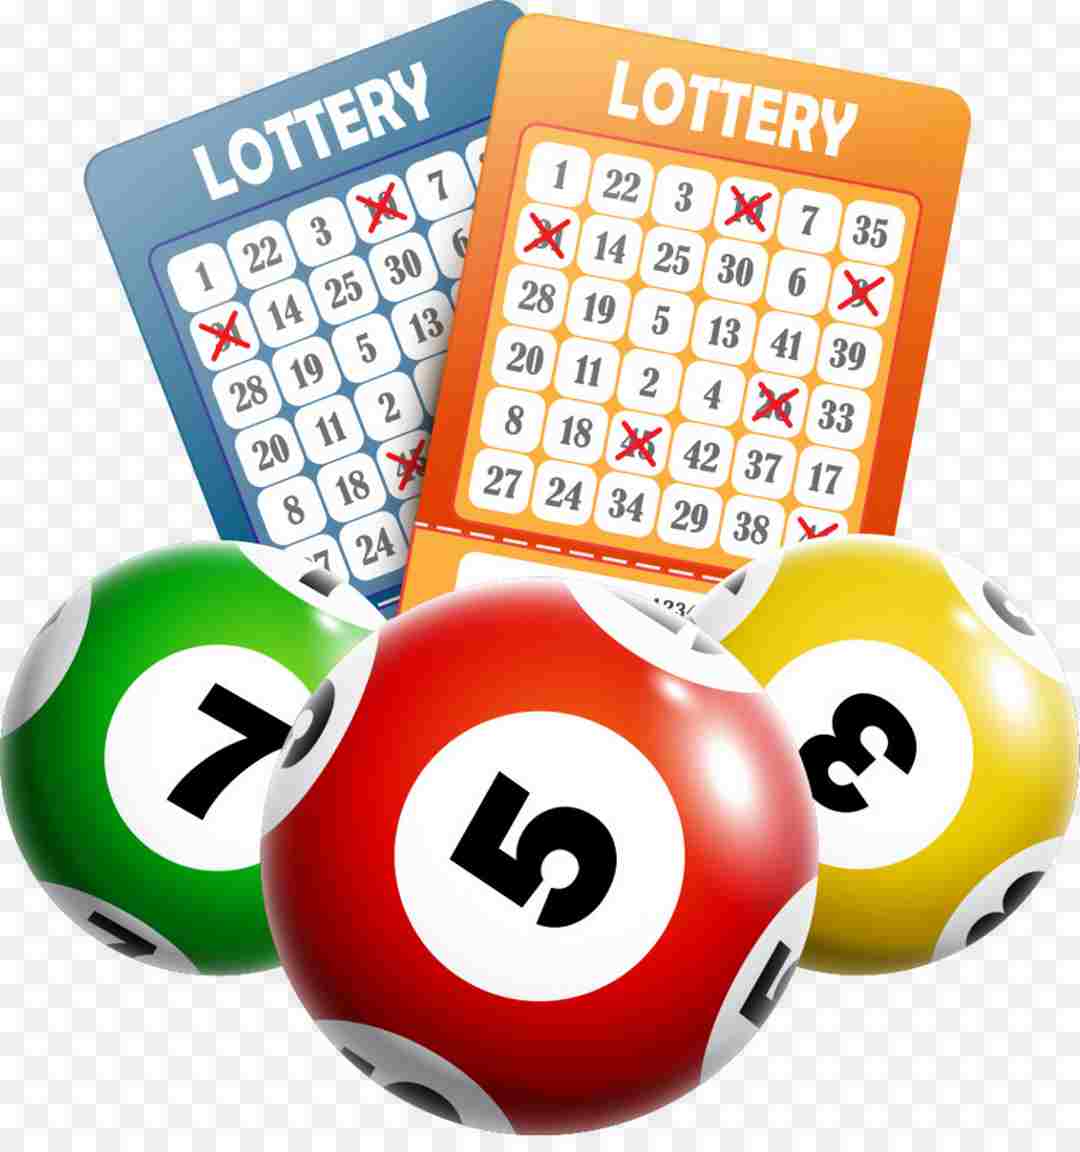 Ae lottery là nhà phát hành game được nhiều người yêu thích